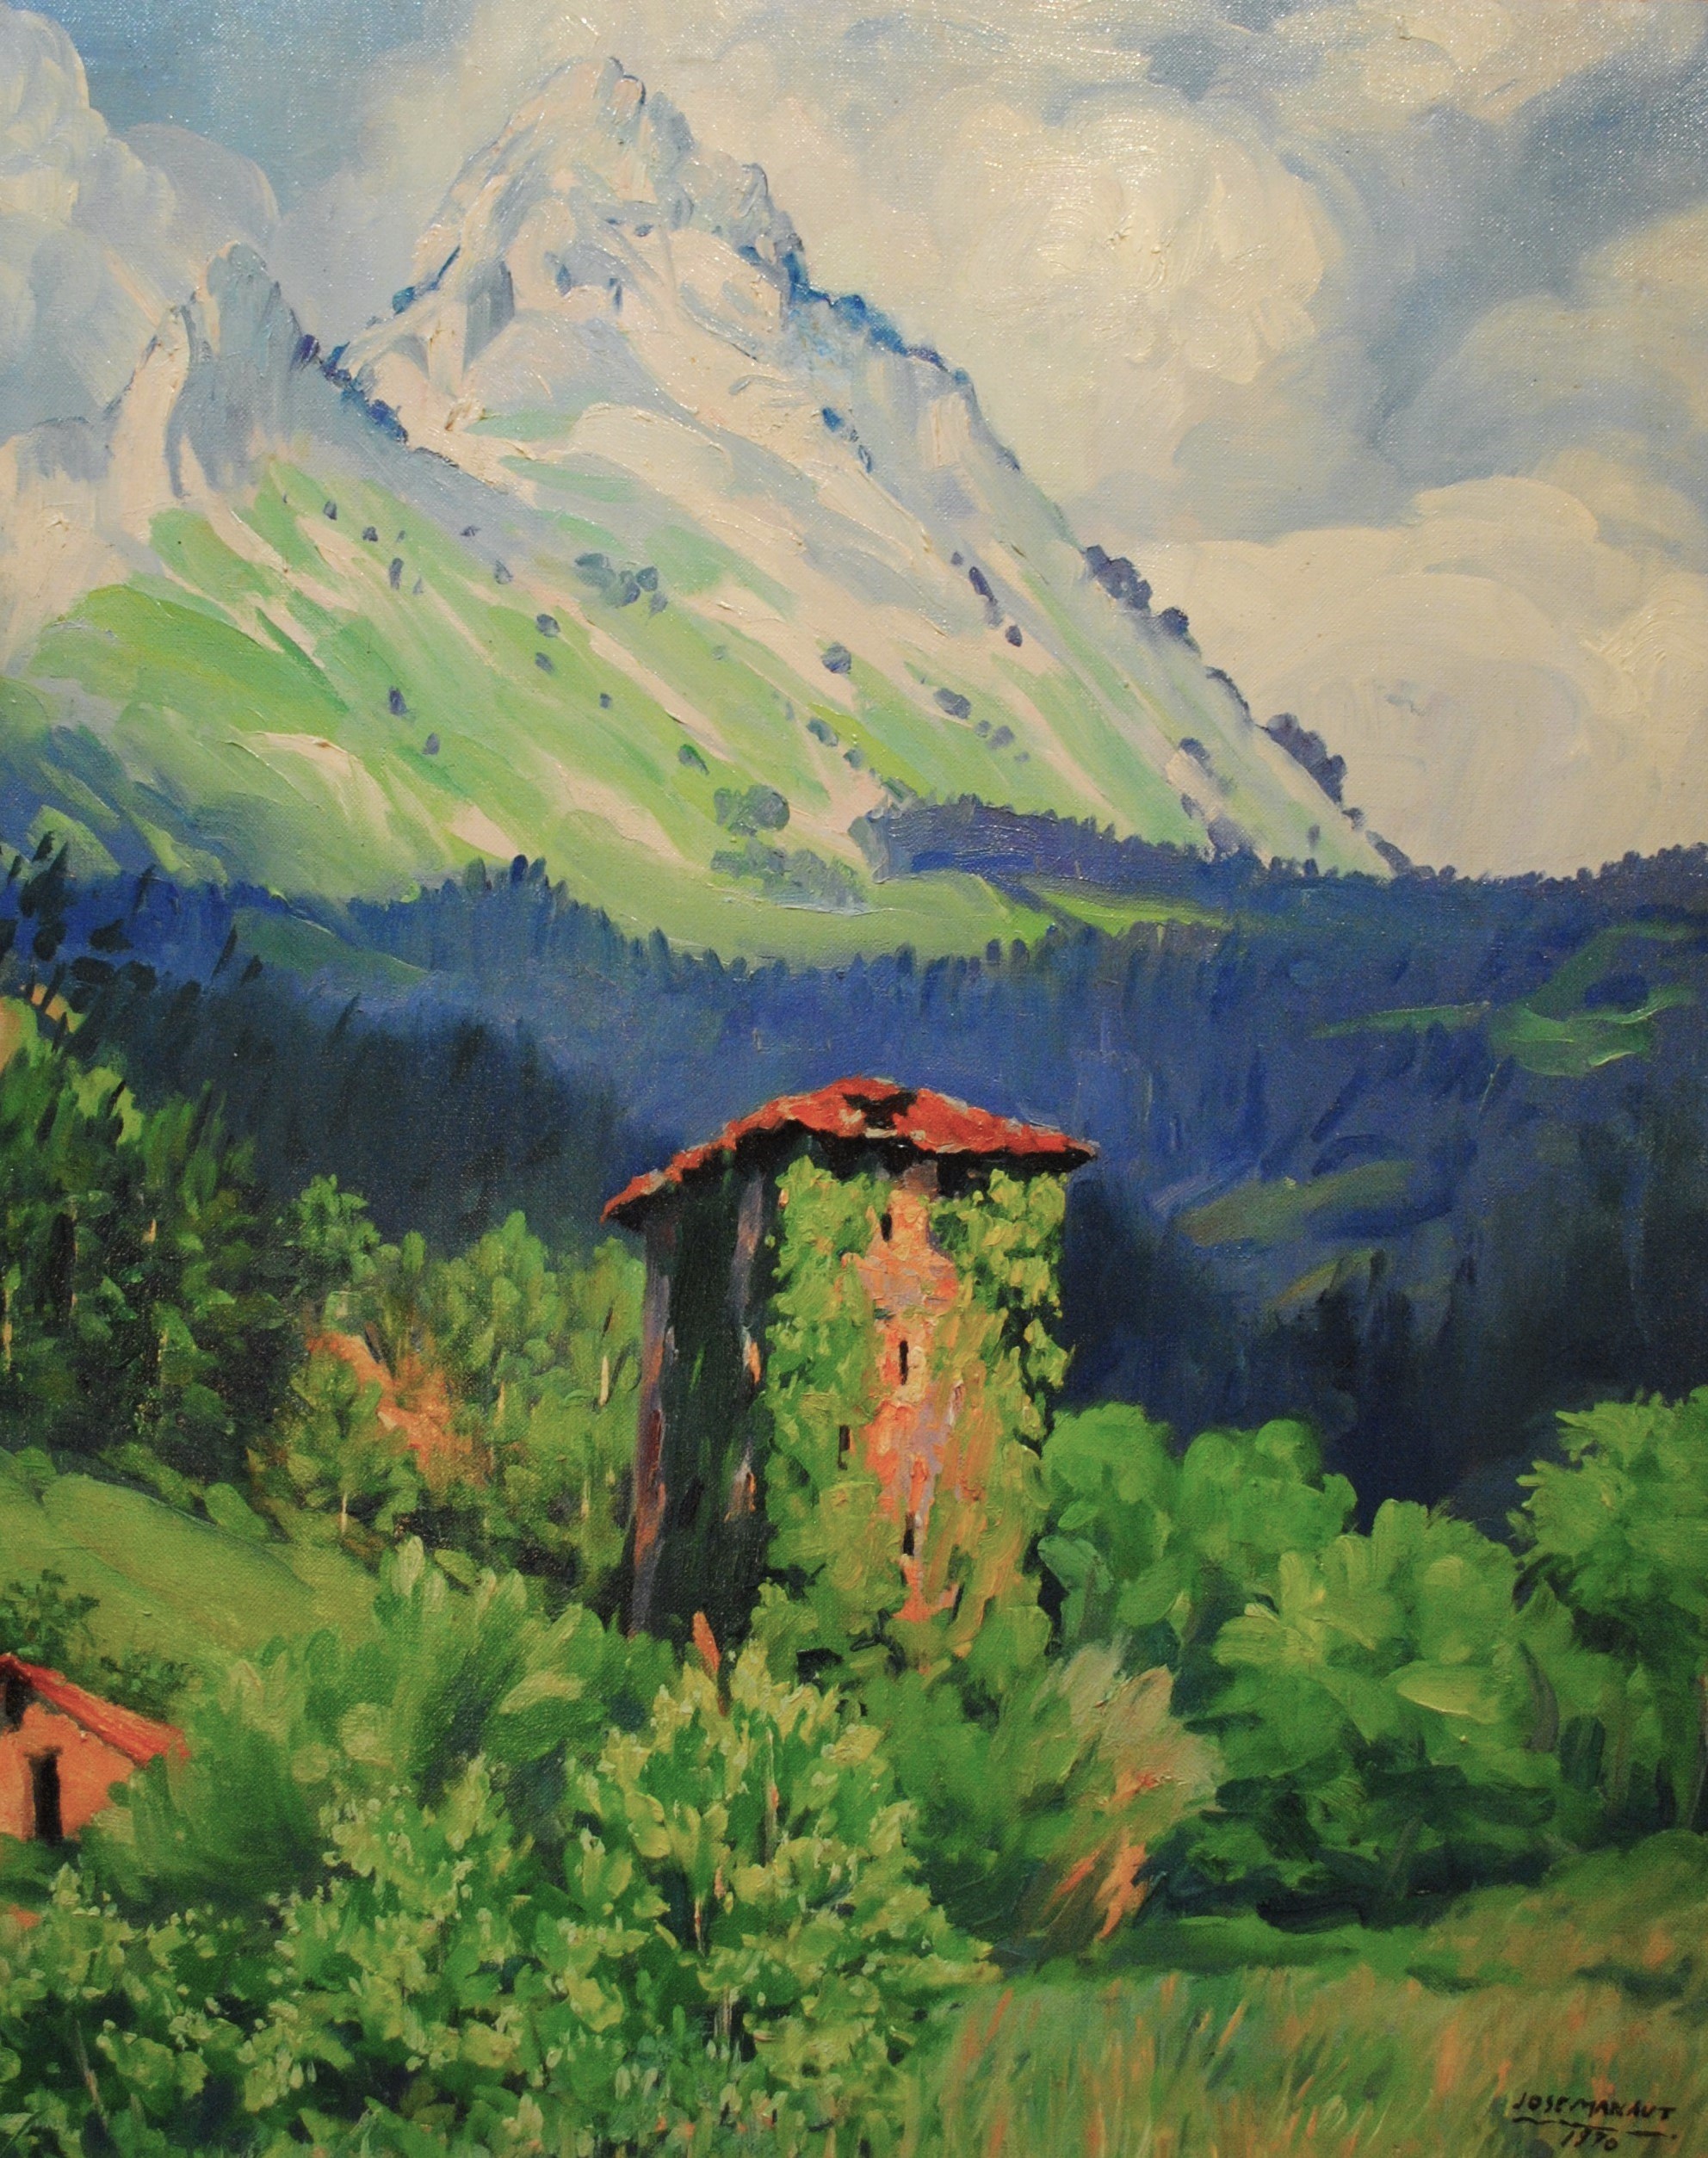 Pintura de José Manaut titulada Picos de Europa, 1970. Óleo sobre lienzo.